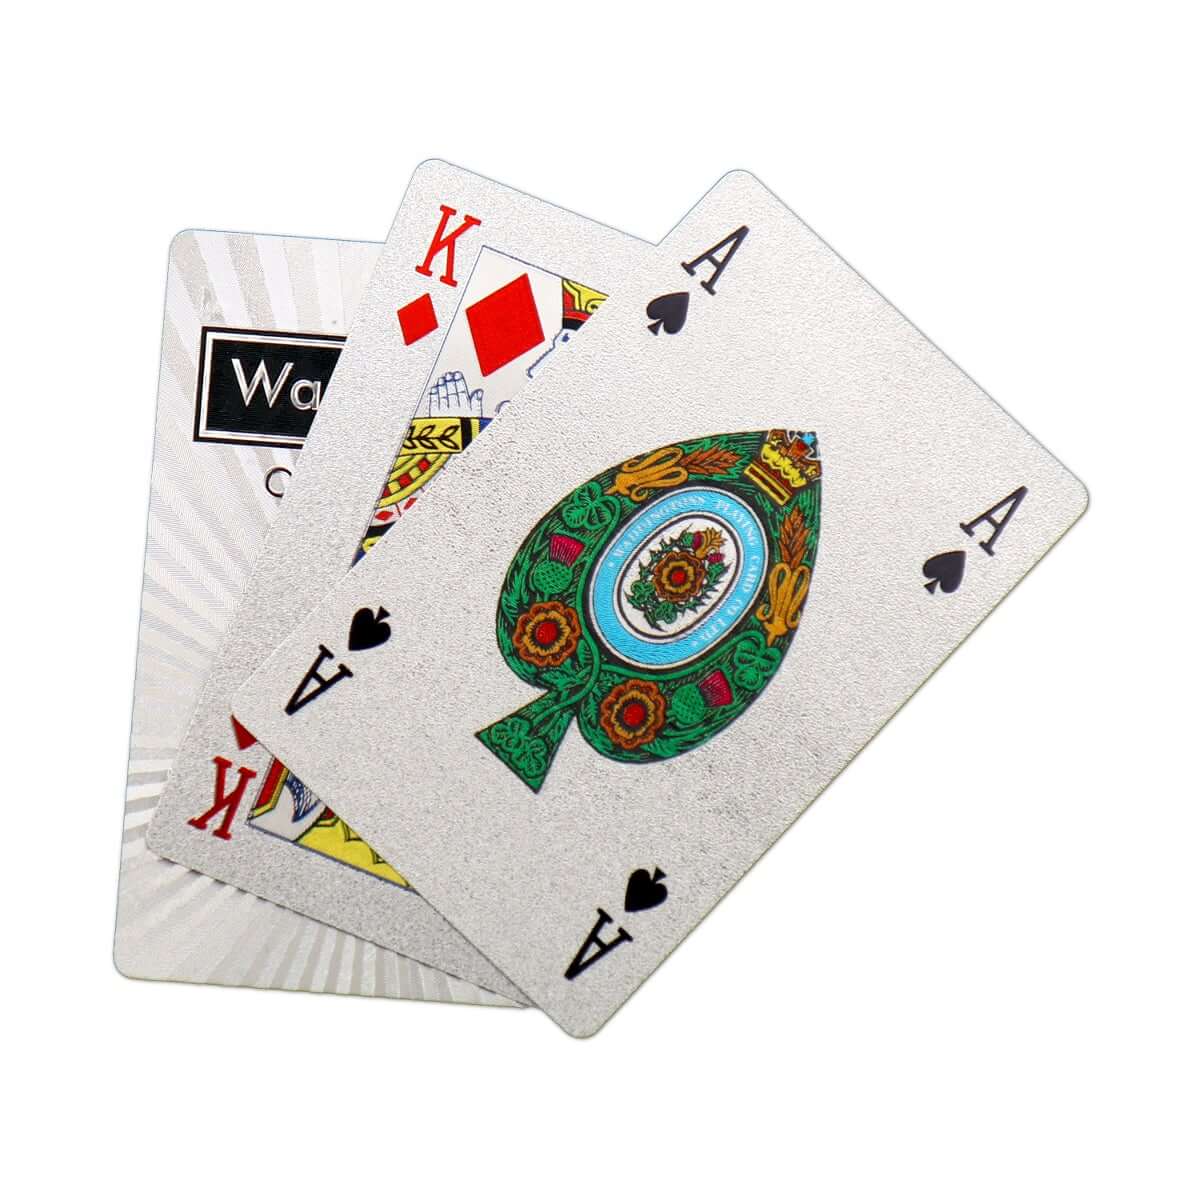 Platinum Waddingtons No.1 Playing Cards